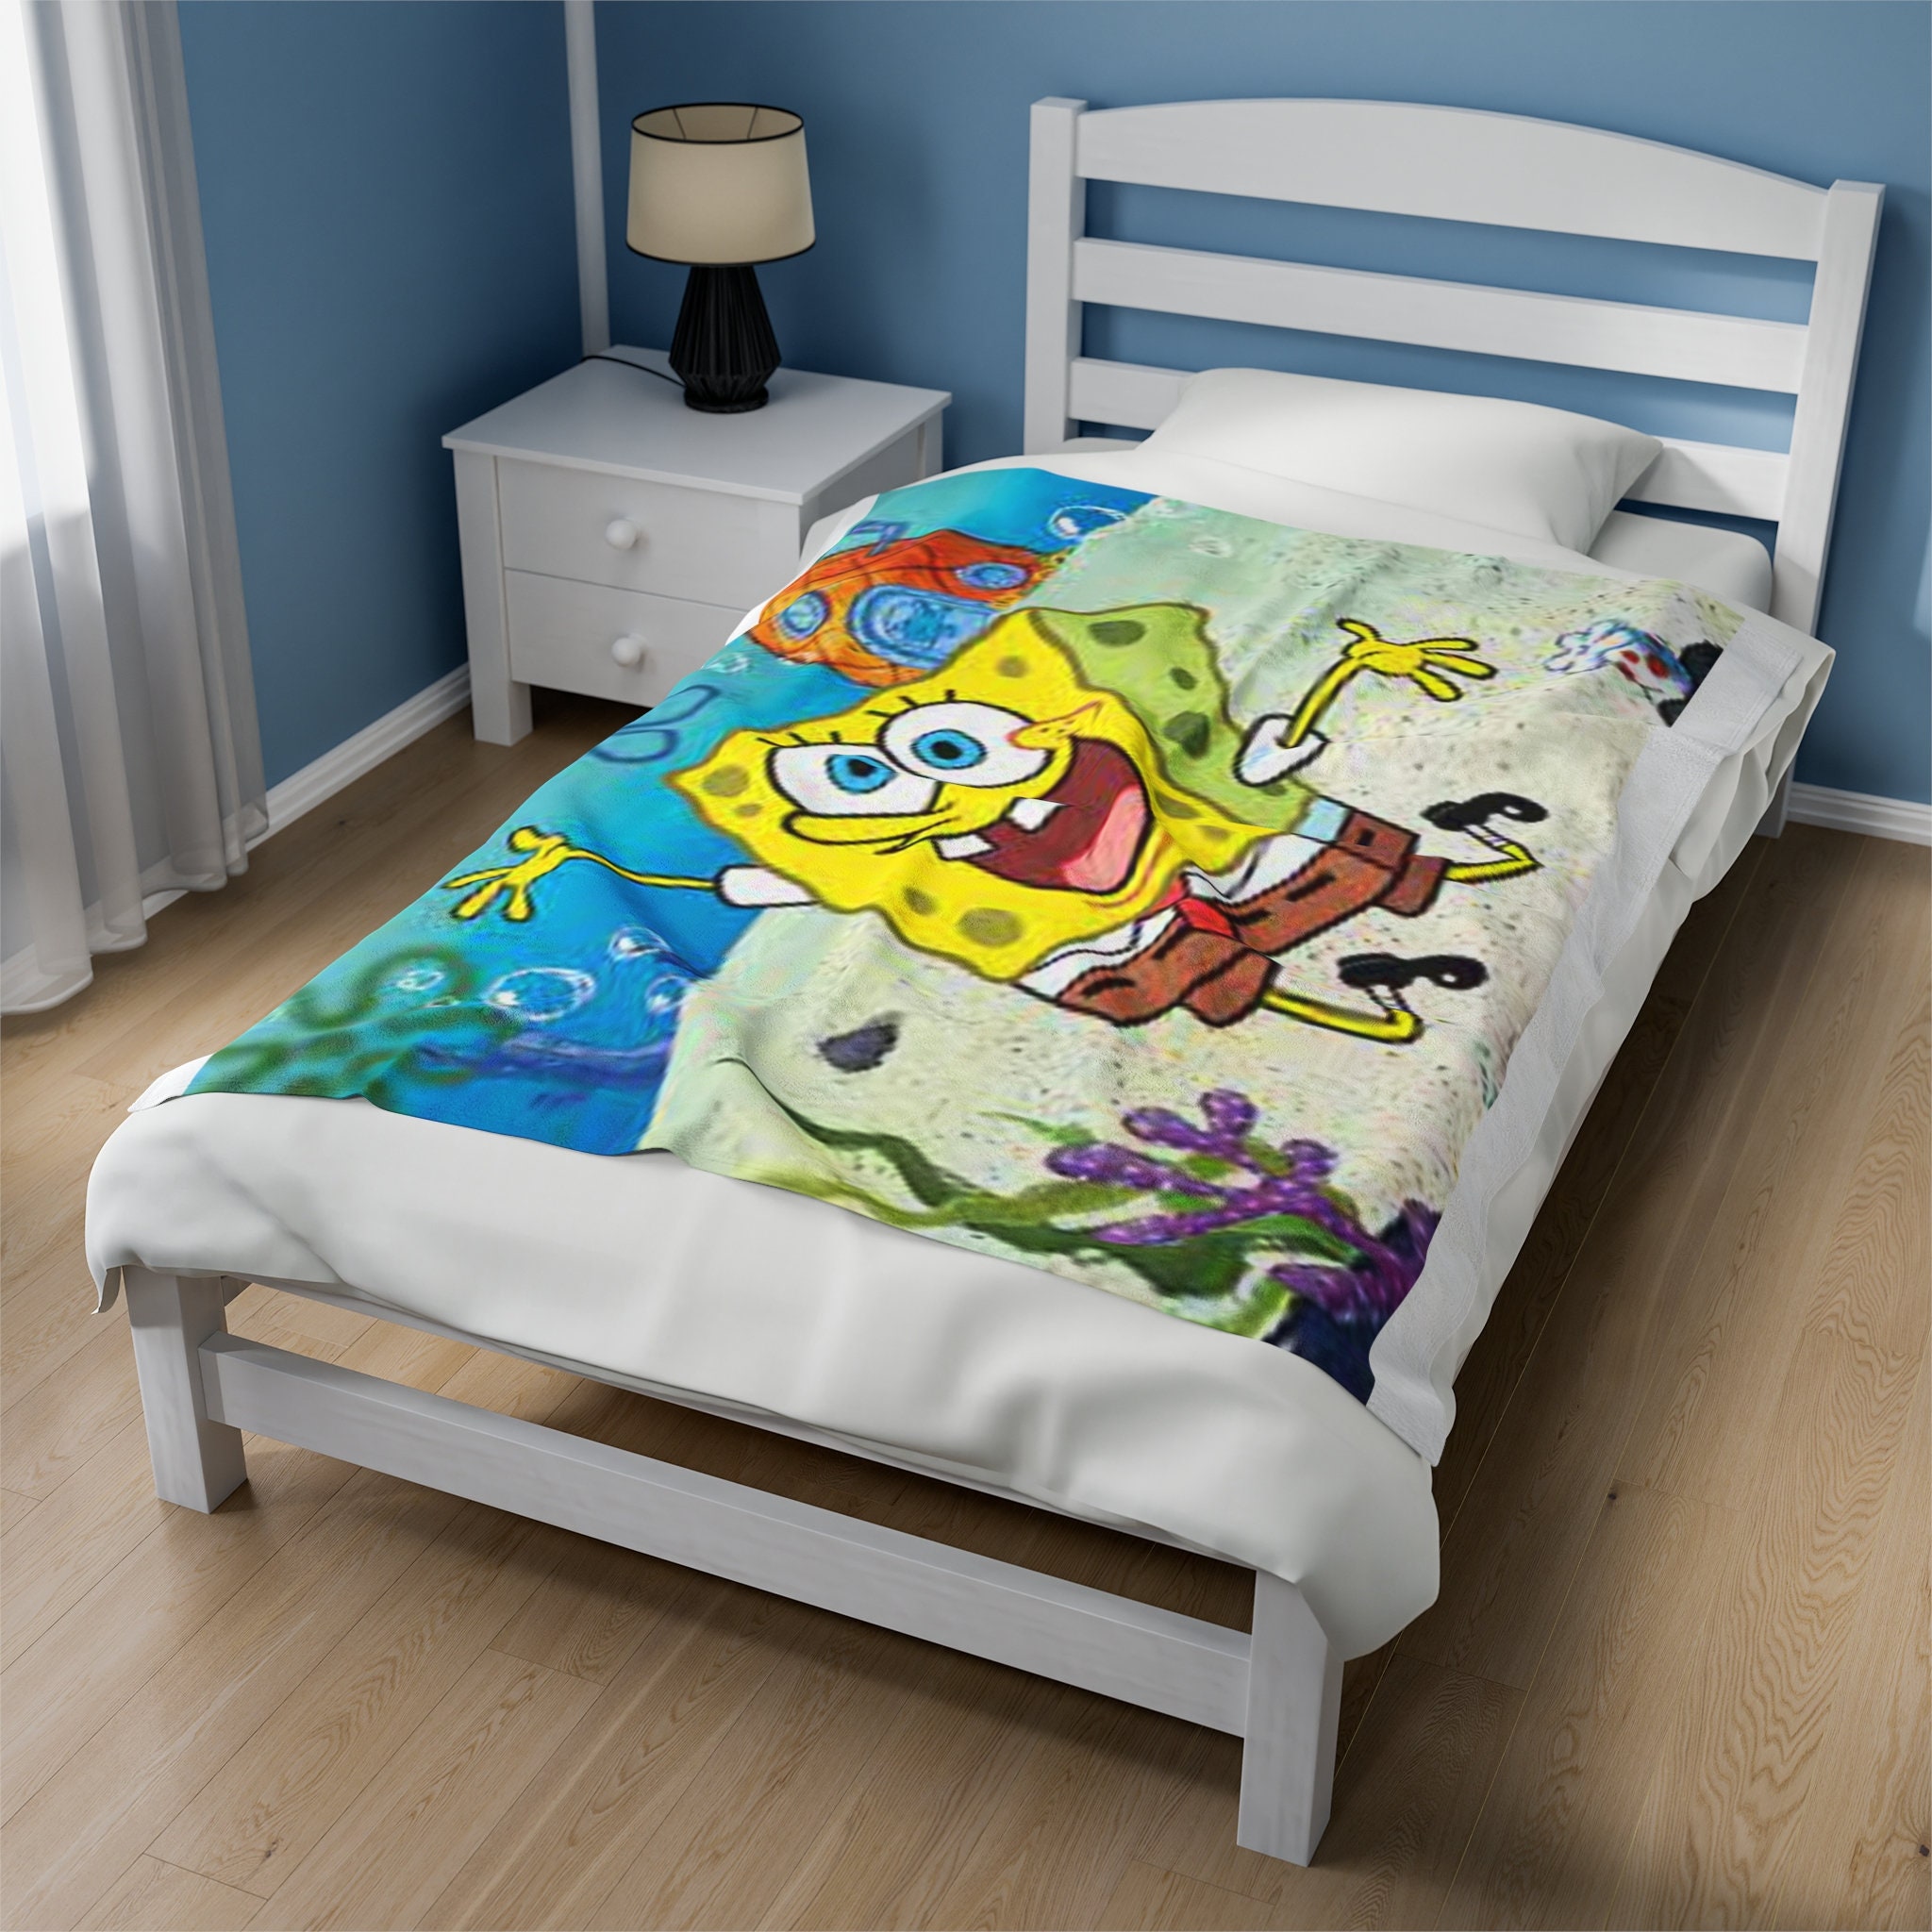 spongebob bedroom furniture